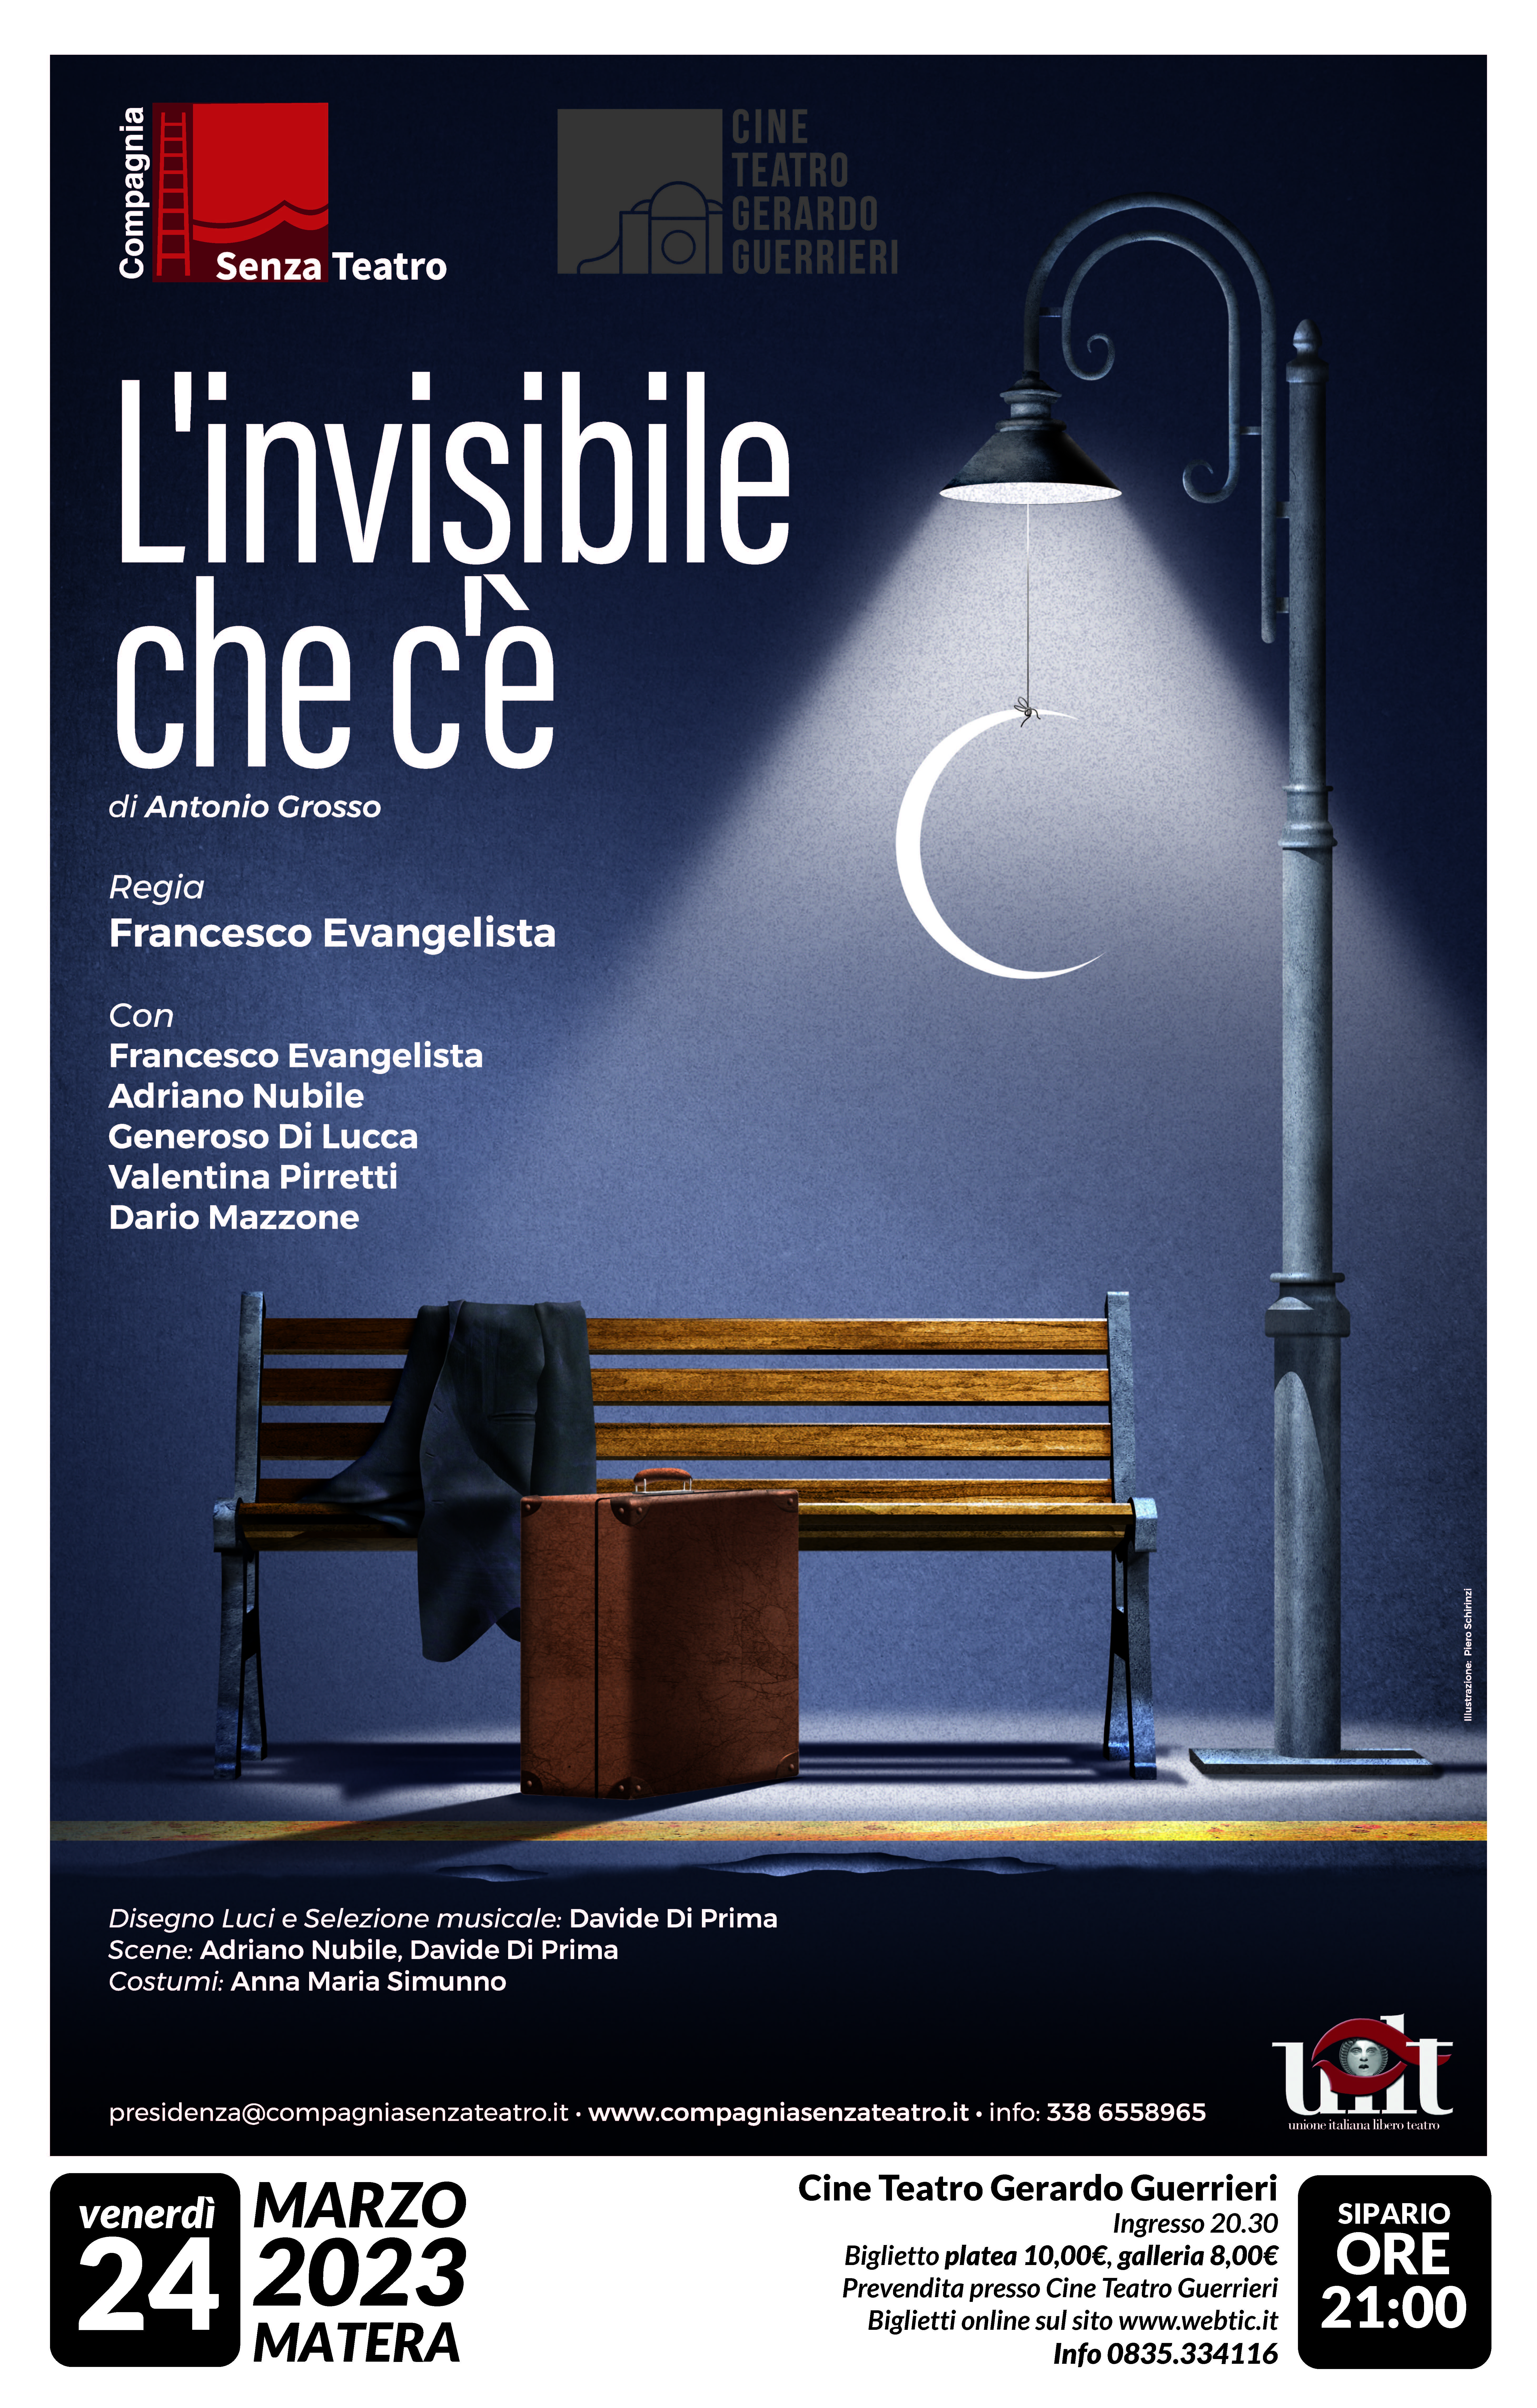 24 Marzo 2023 ore 20:30 L’Invisibile che c’è- Matera- Cine Teatro Comunale